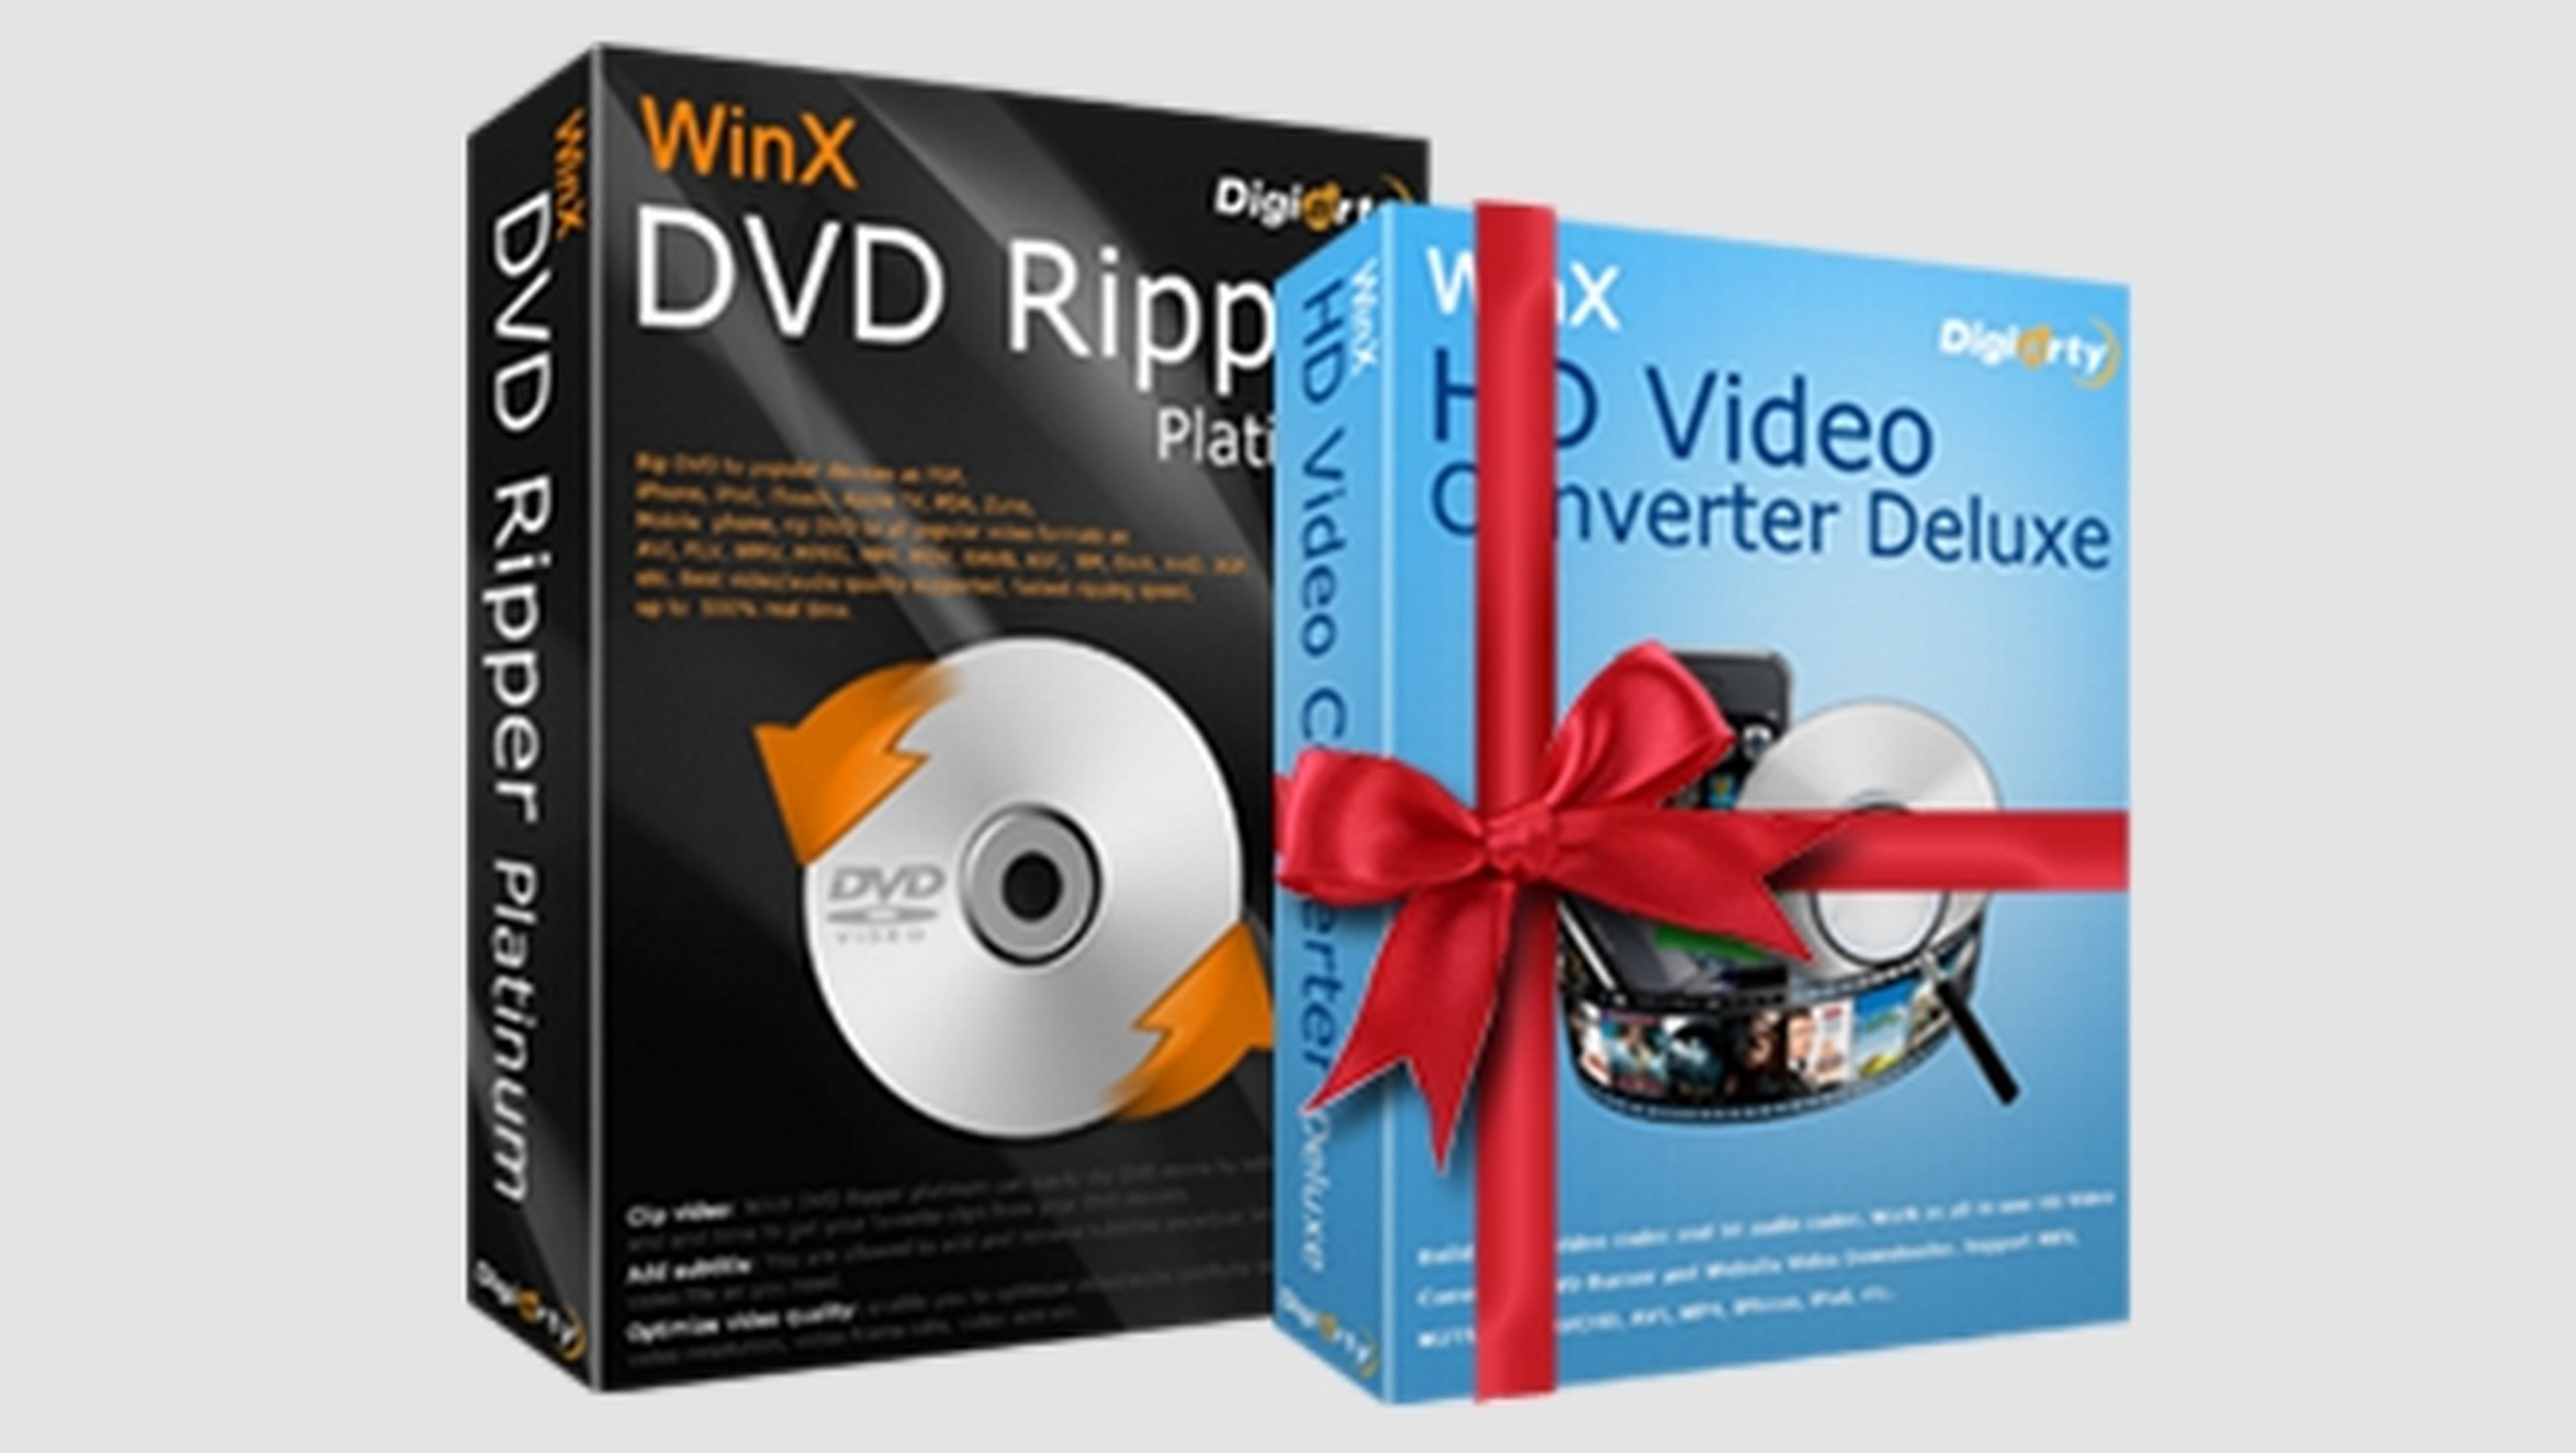 WinX DVD Ripper Platinum convierte gratis tus DVDs al formato Windows 10.